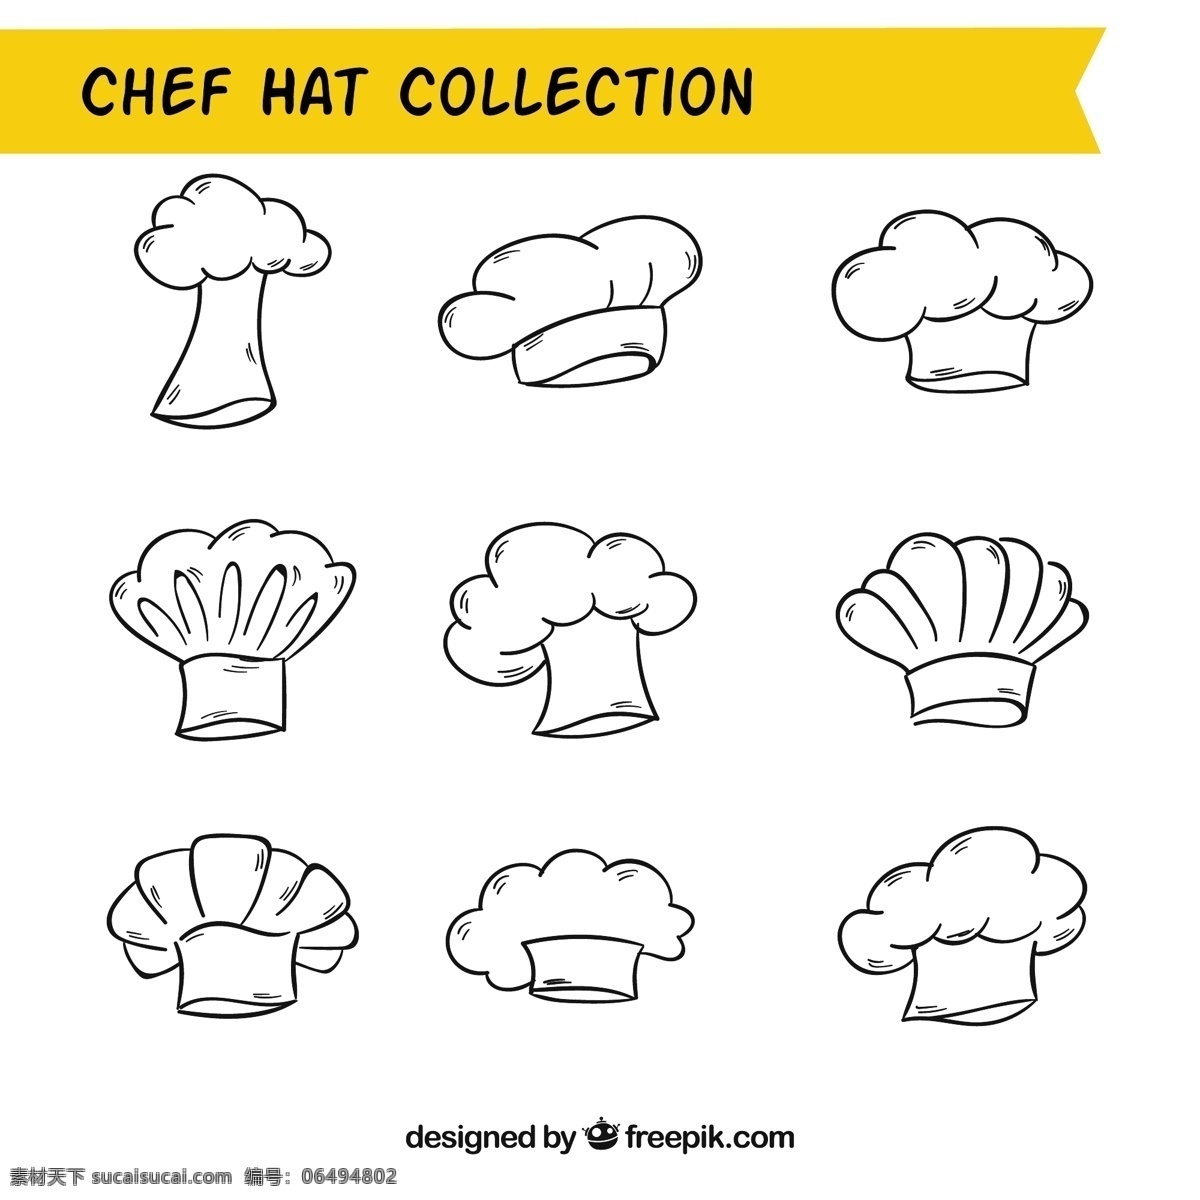 手绘 不同 厨师 帽子 矢量 不同设计的 厨师帽子 矢量素材